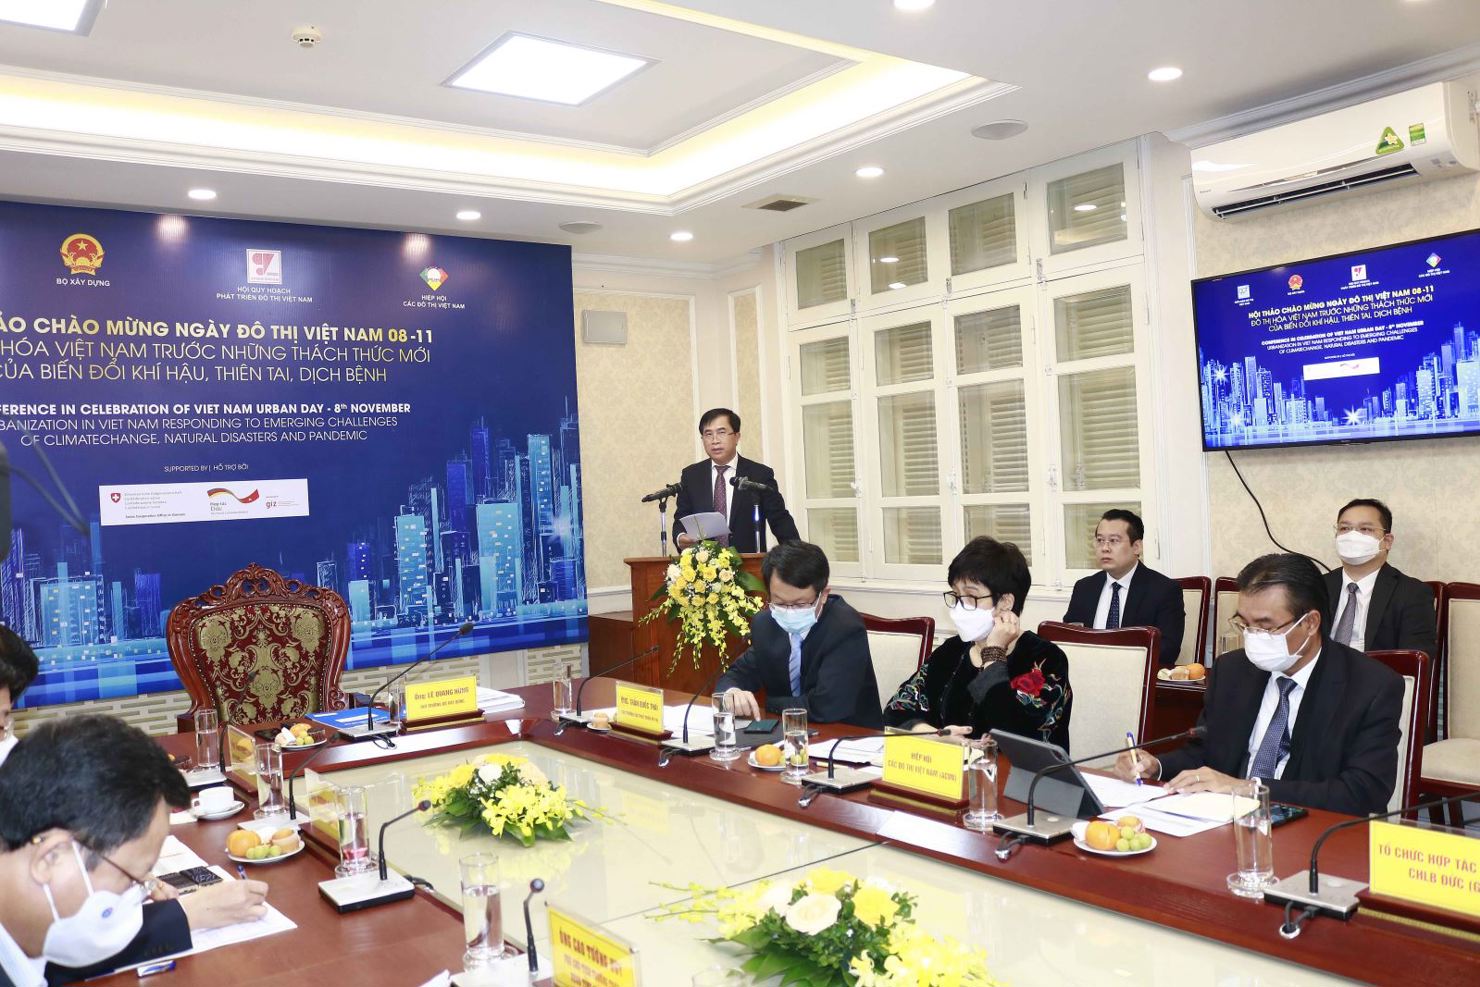 Thứ trưởng Bộ Xây dựng Lê Quang Hùng phát biểu khai mạc hội thảo "Đô thị hóa Việt Nam trước những thách thức mới của biến đổi khí hậu”.